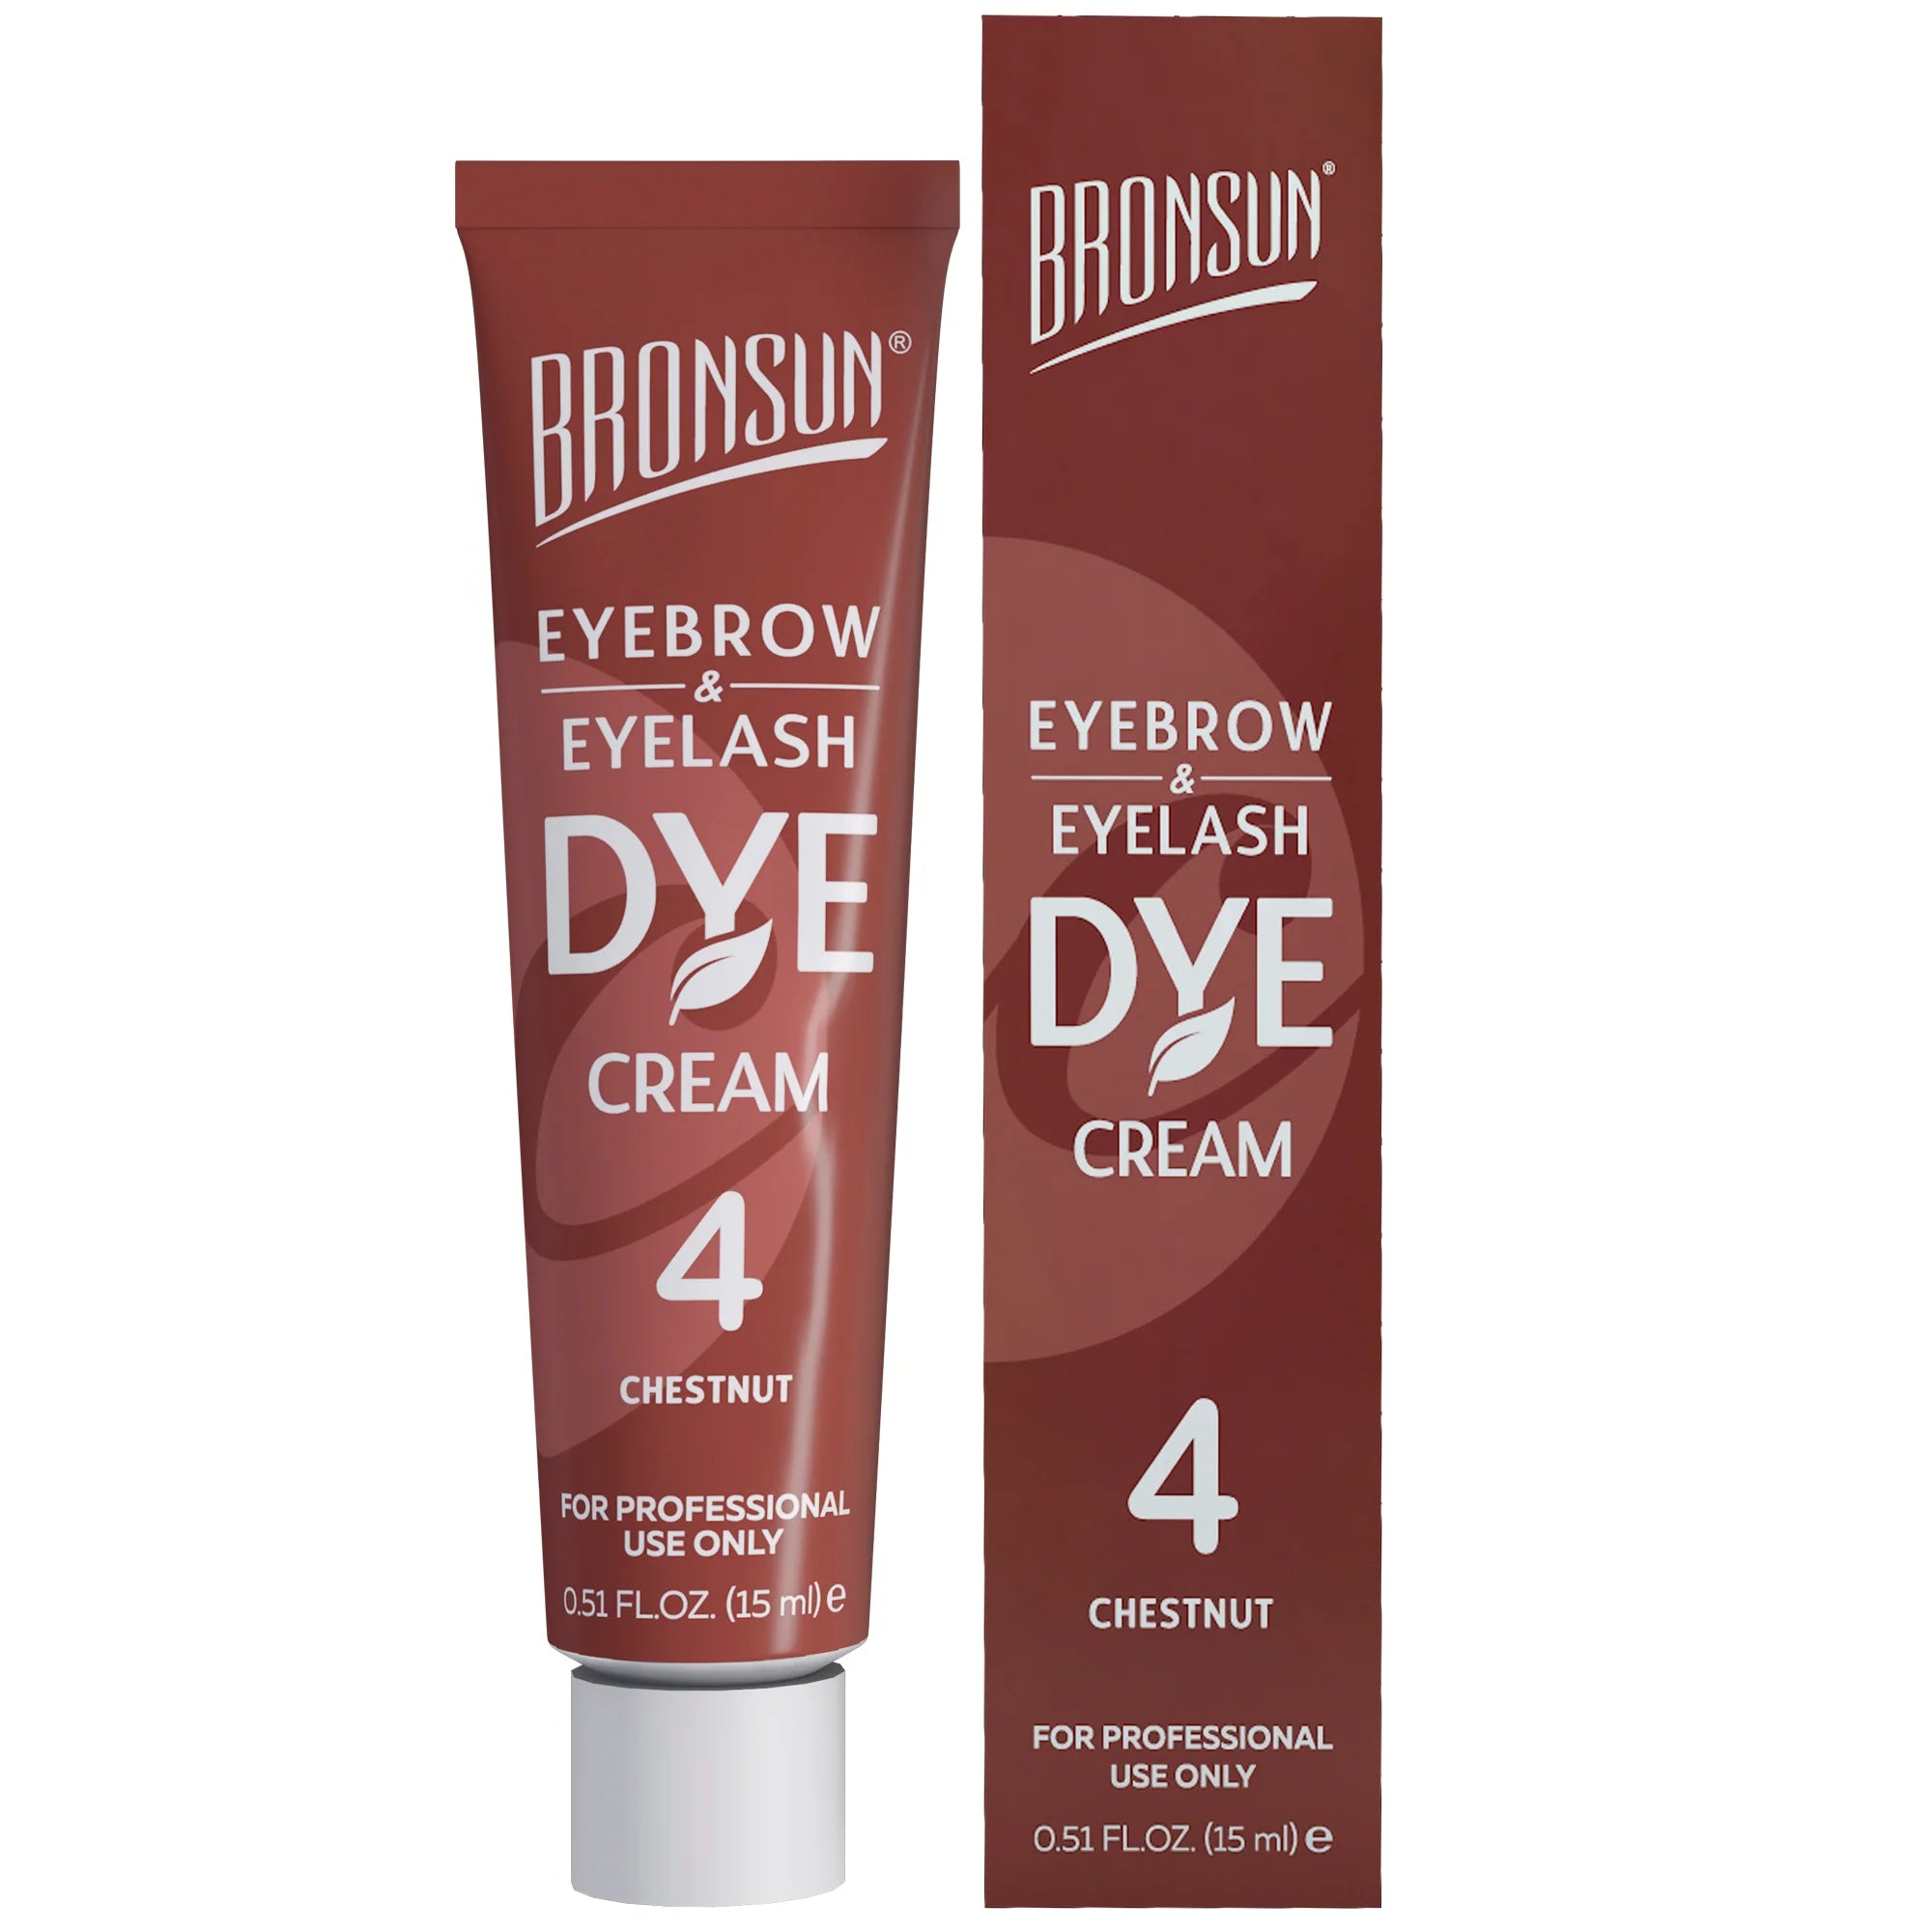 Bronsun Eyelash & Eyebrow Cream Dye